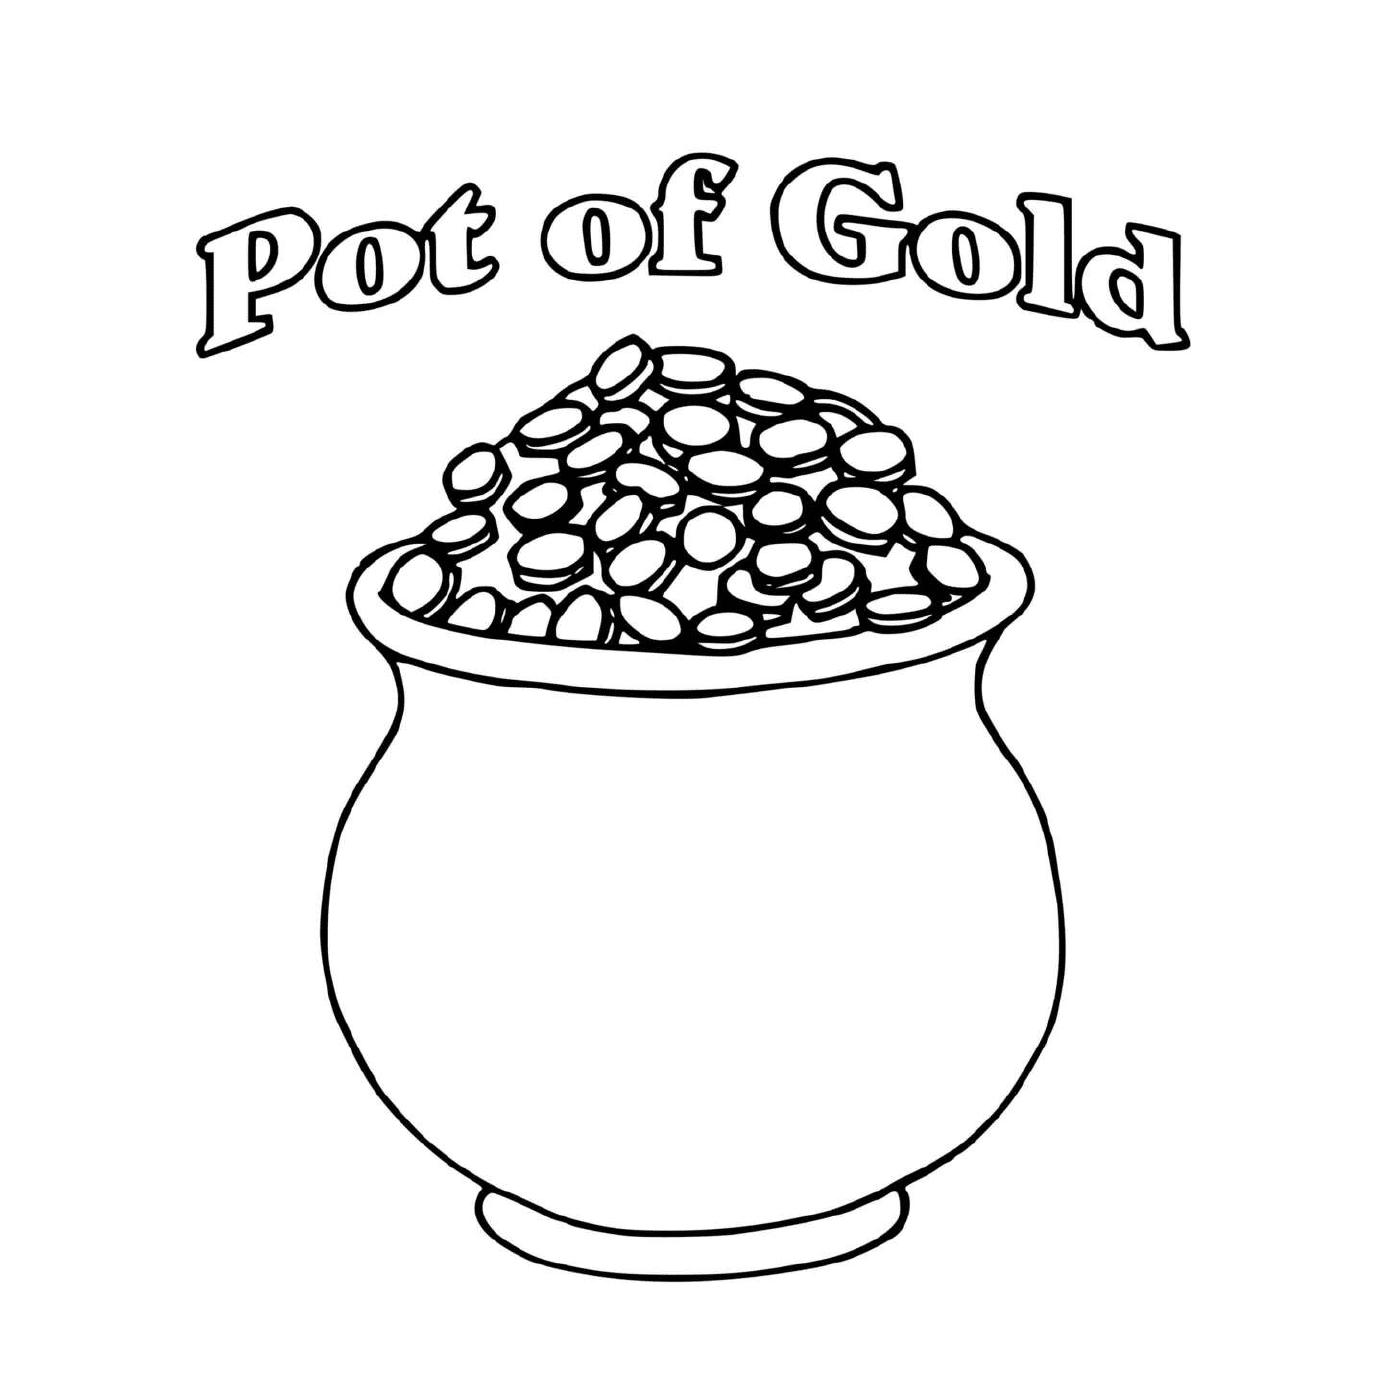  Ein Topf mit Gold gefüllt mit Münzen für St. Patrick's 